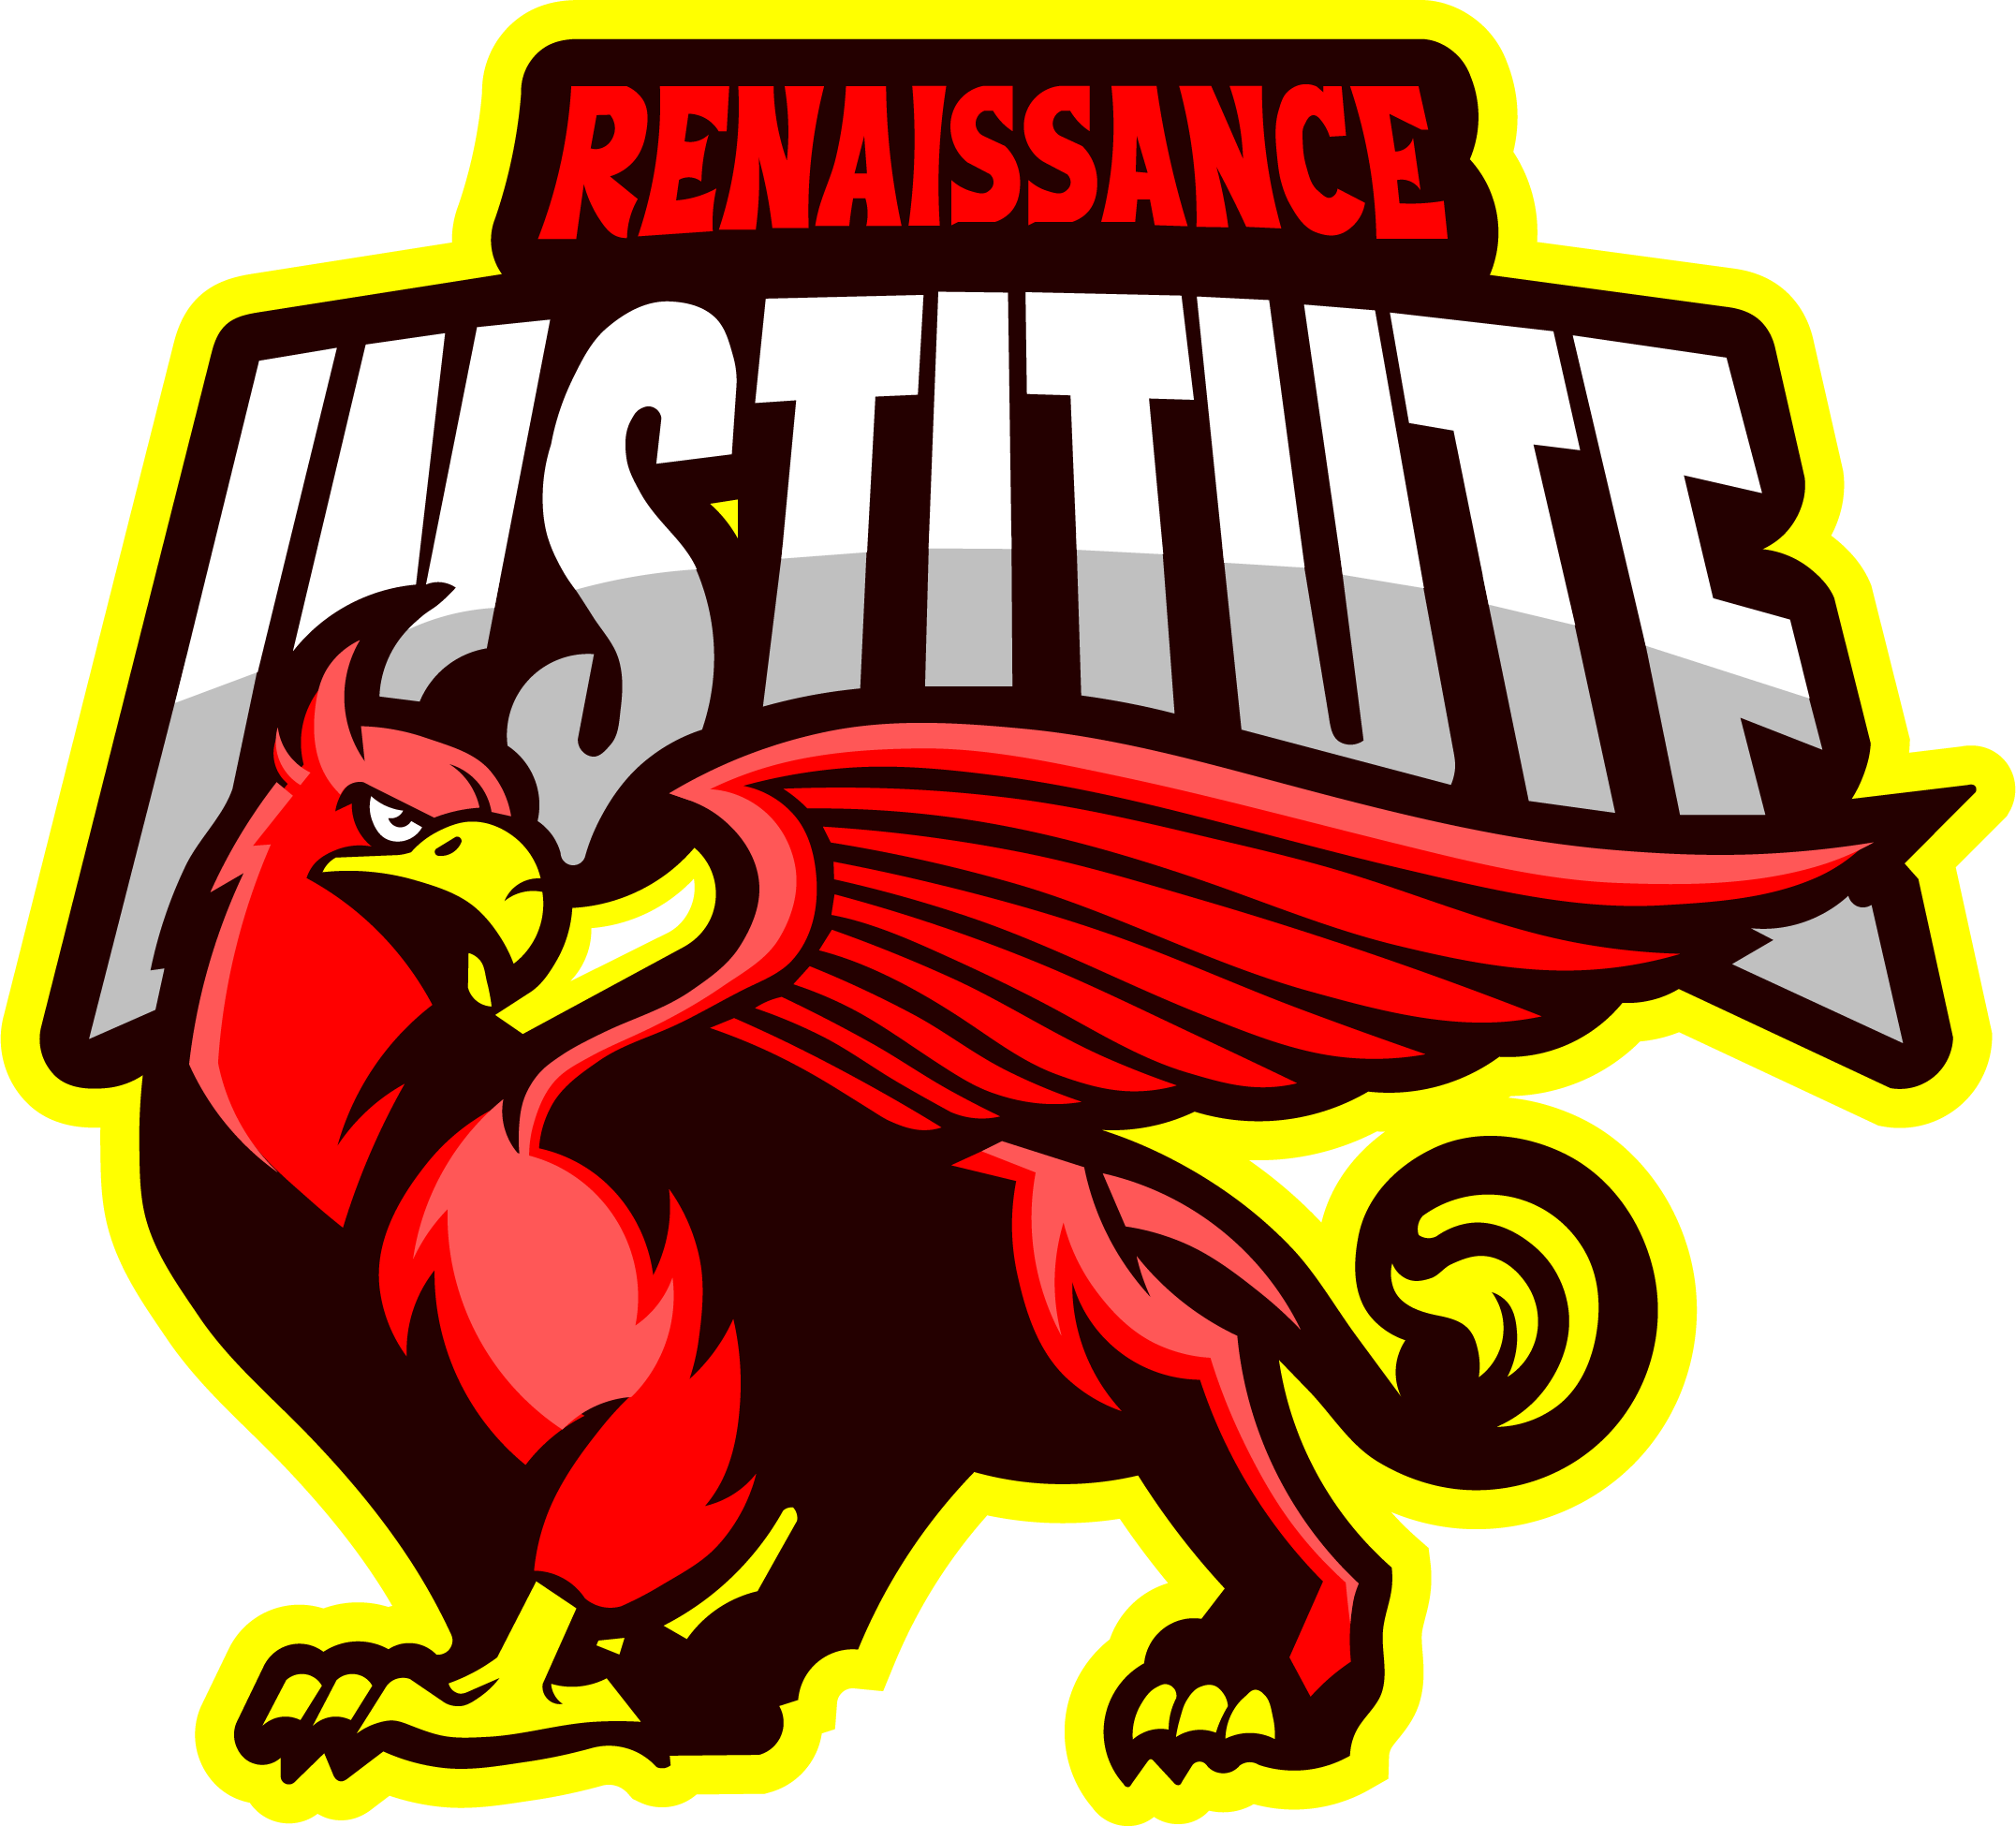 Renaissance Institute